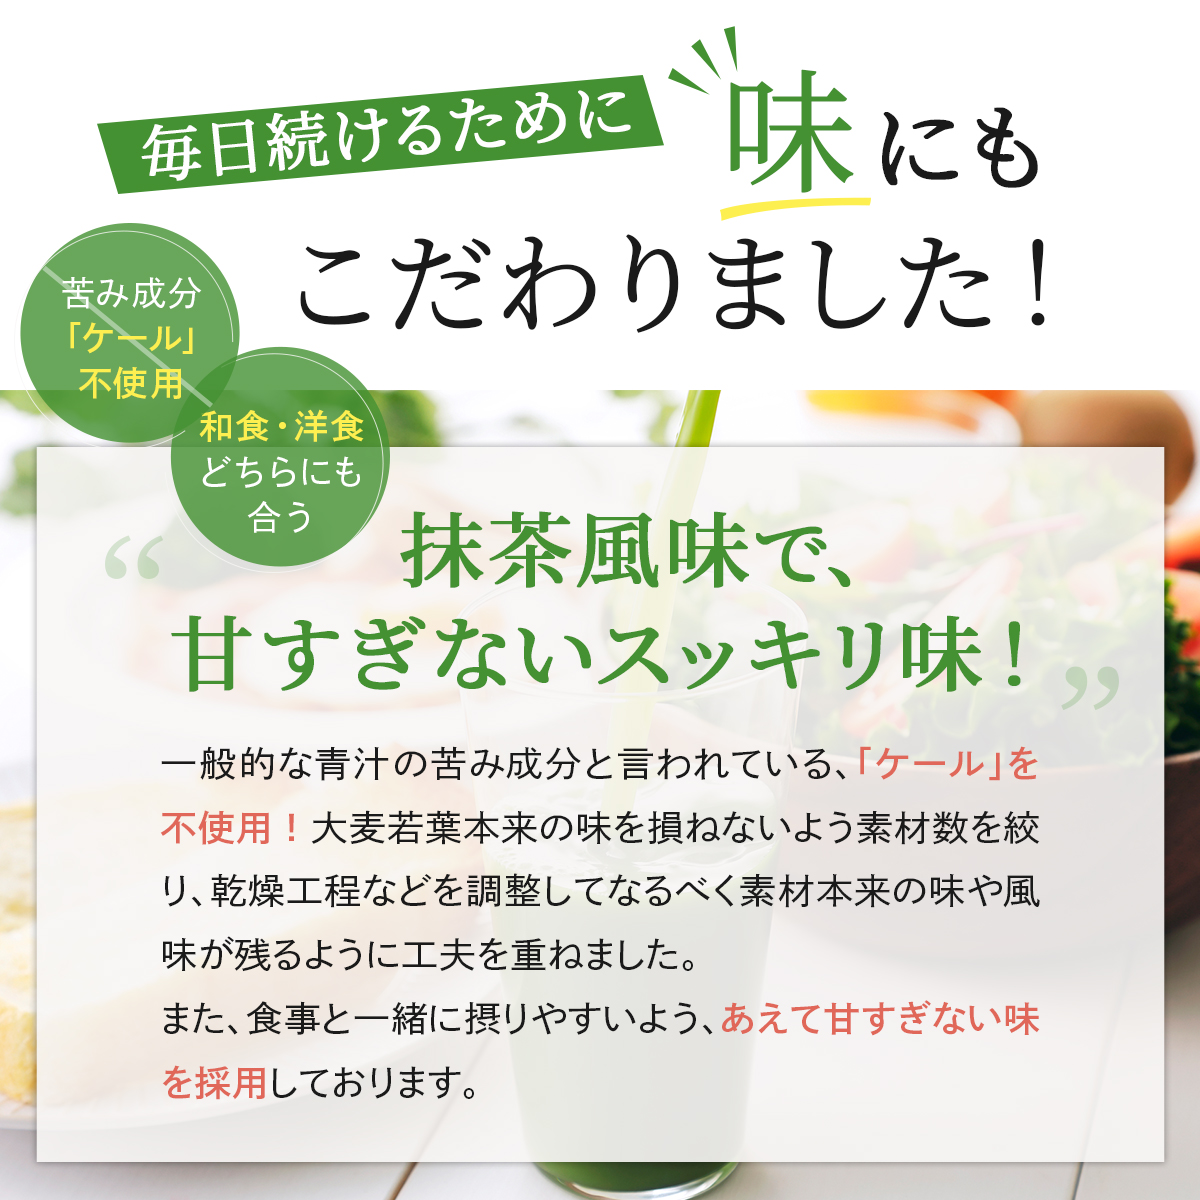 3箱セット) 青汁 乳酸菌 Ｗの健康青汁 新日本製薬 公式 機能性表示食品 